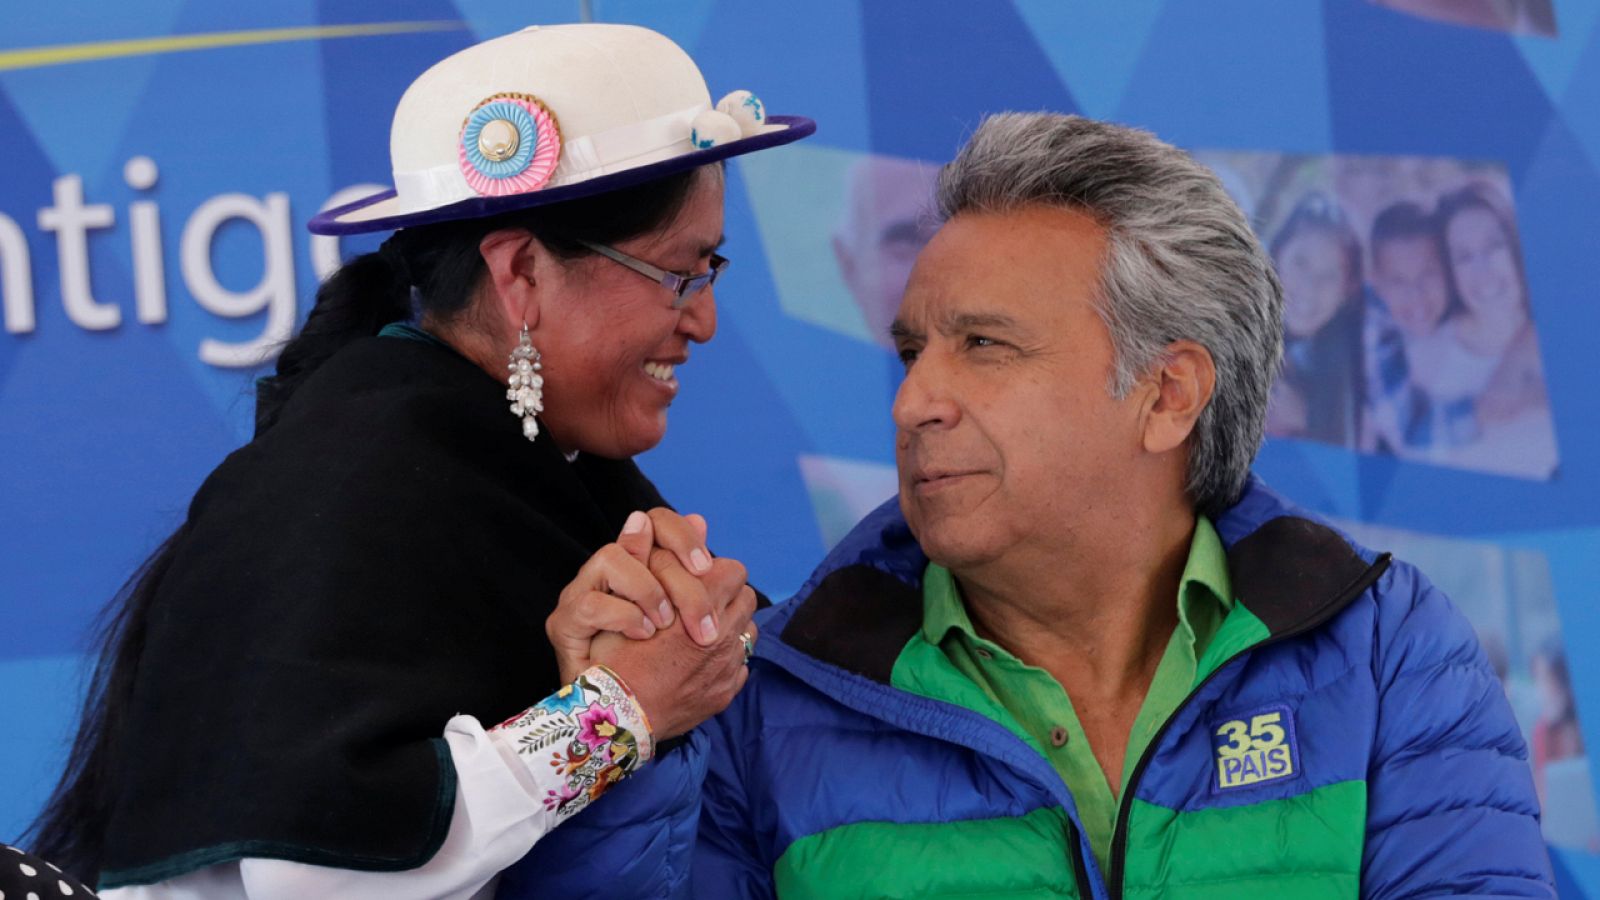 El candidato oficialista Lenin Moreno, favorito a la presidencia, saluda en un mitin a una una miembro de la comunidad indígena de Quito.